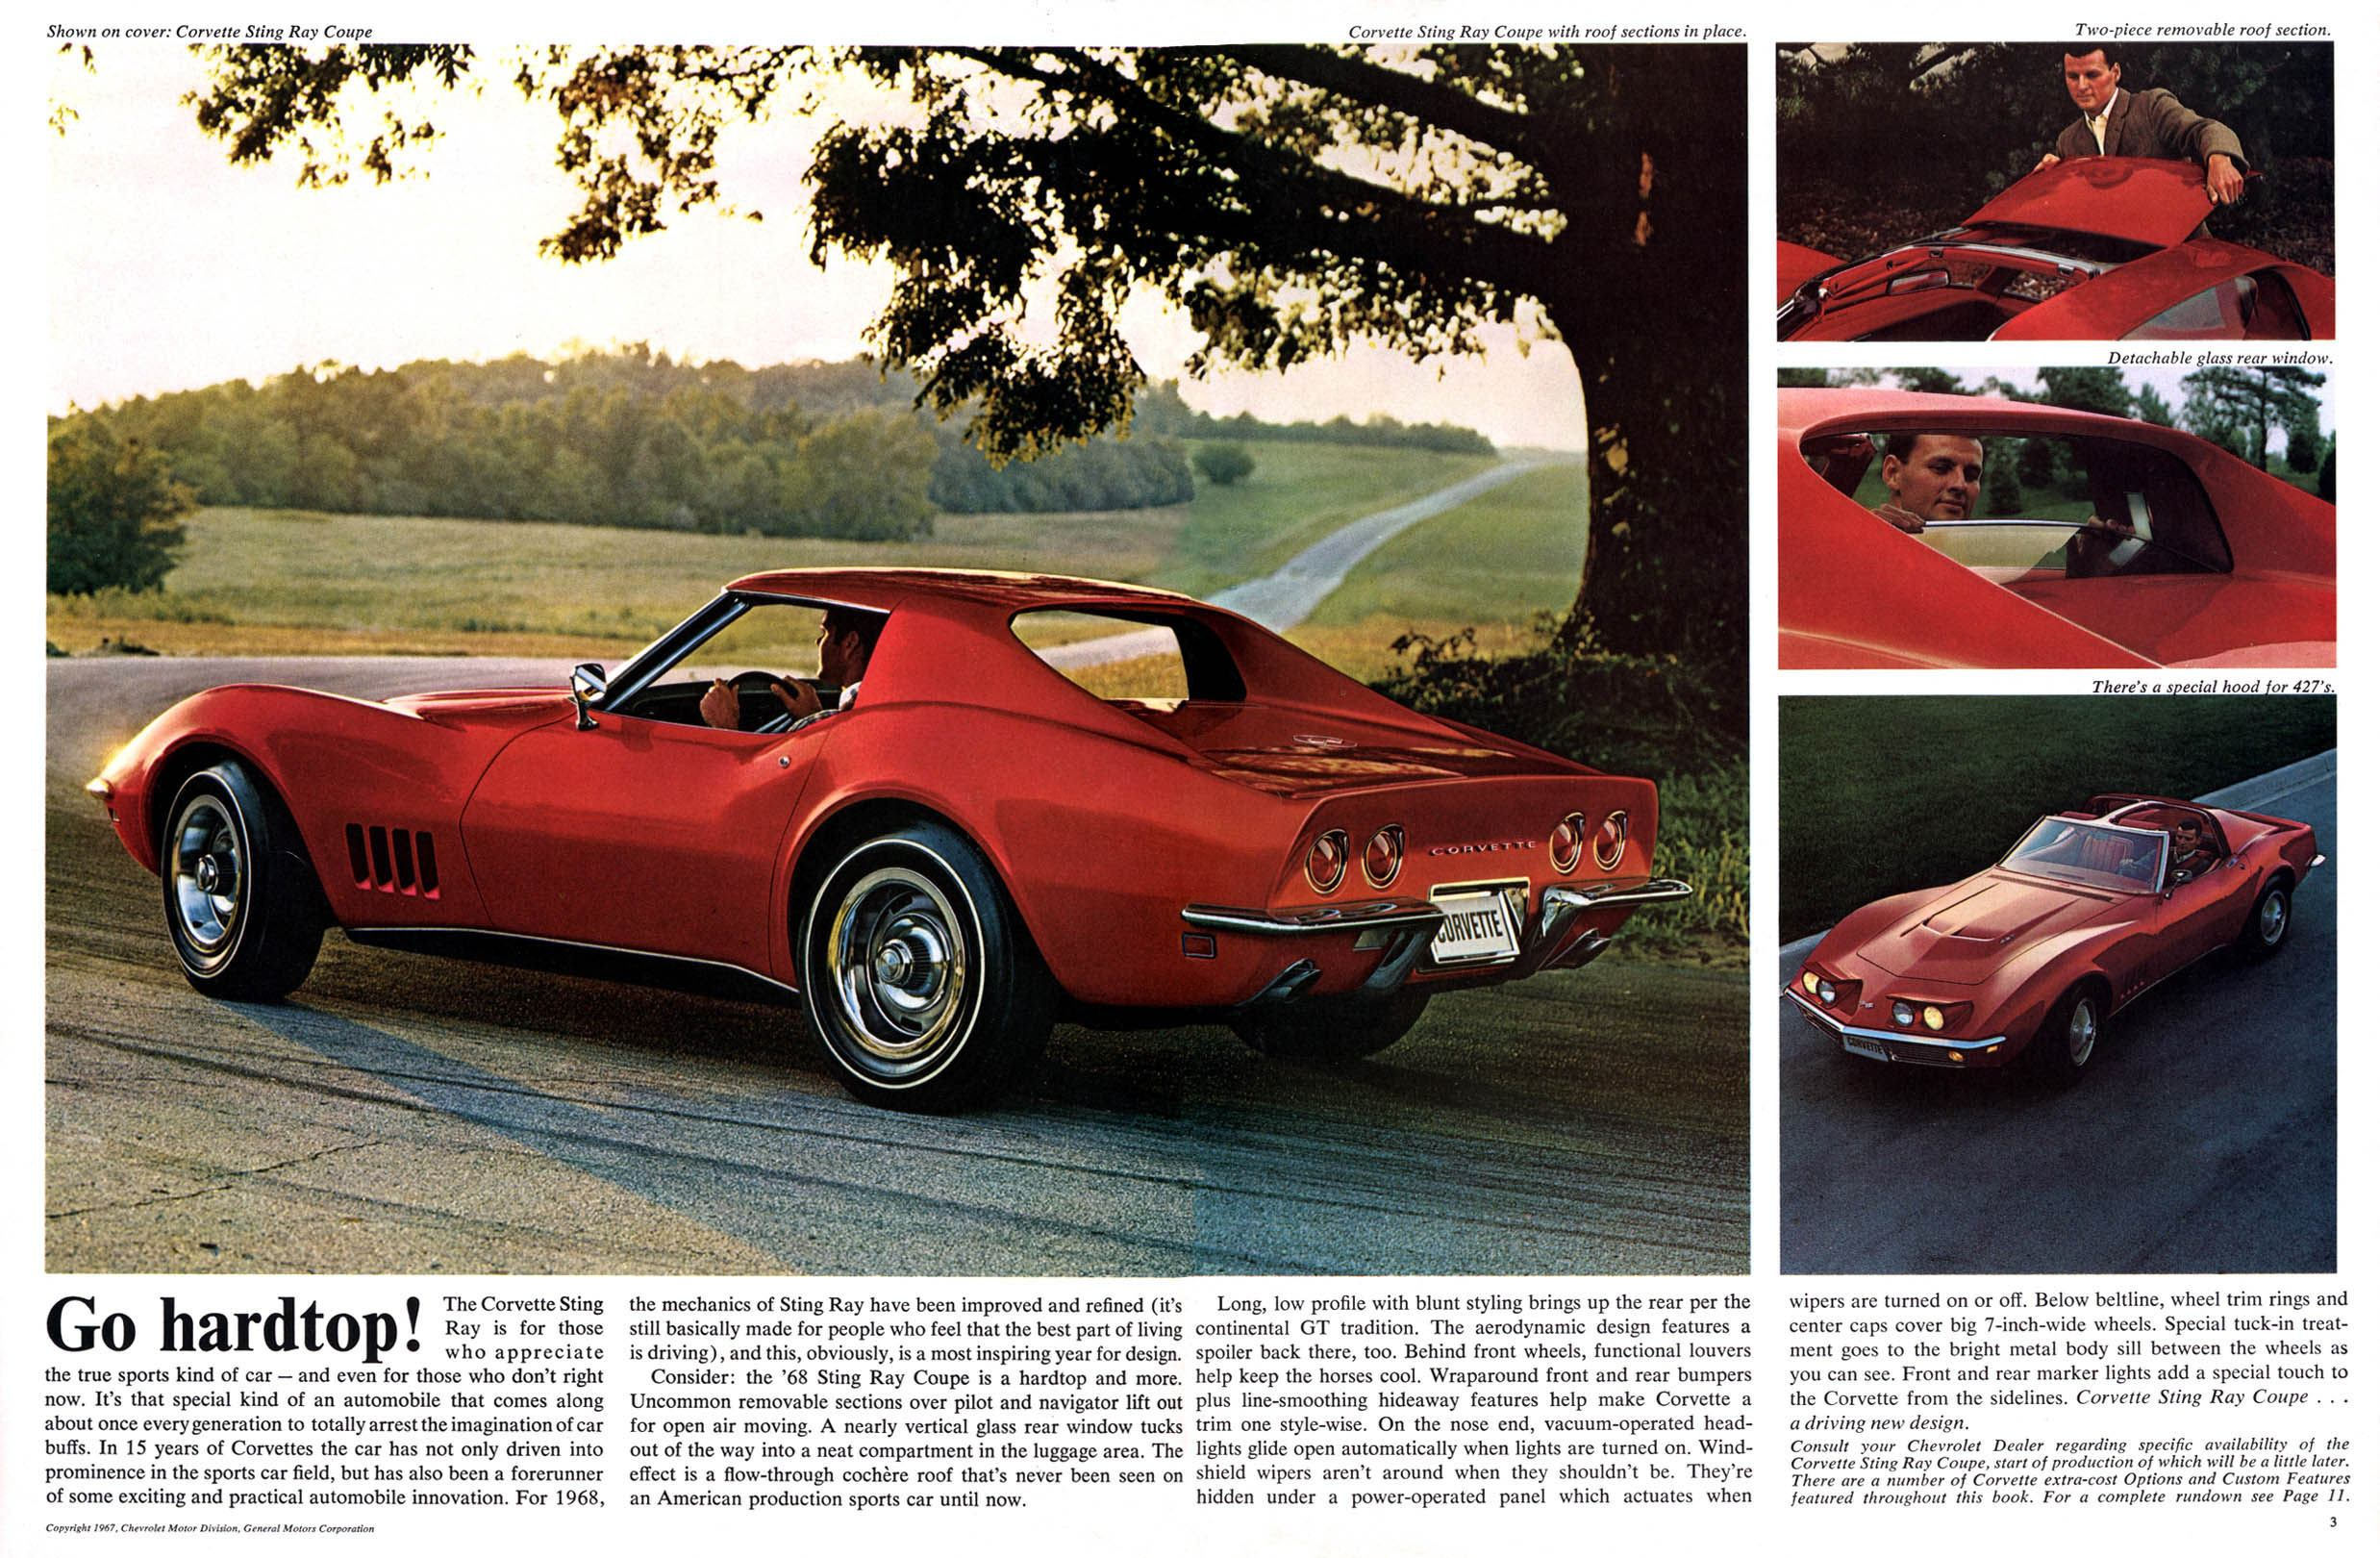 1968_Chevrolet_Corvette-02-03